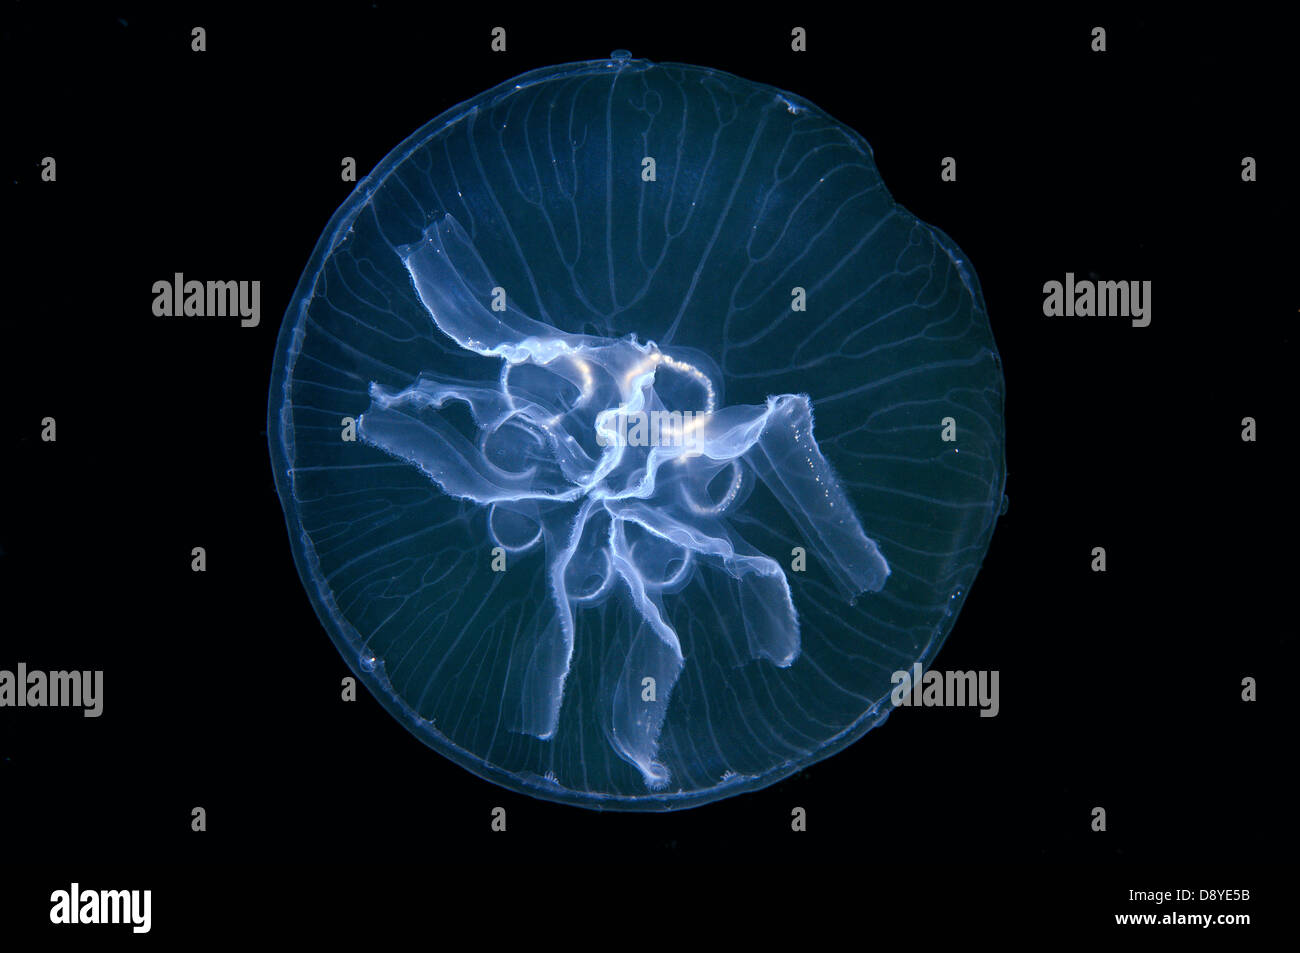 Una mutazione genetica, questa medusa ha sette gonadi invece di quattro. Luna jelly, luna meduse, meduse comune Foto Stock